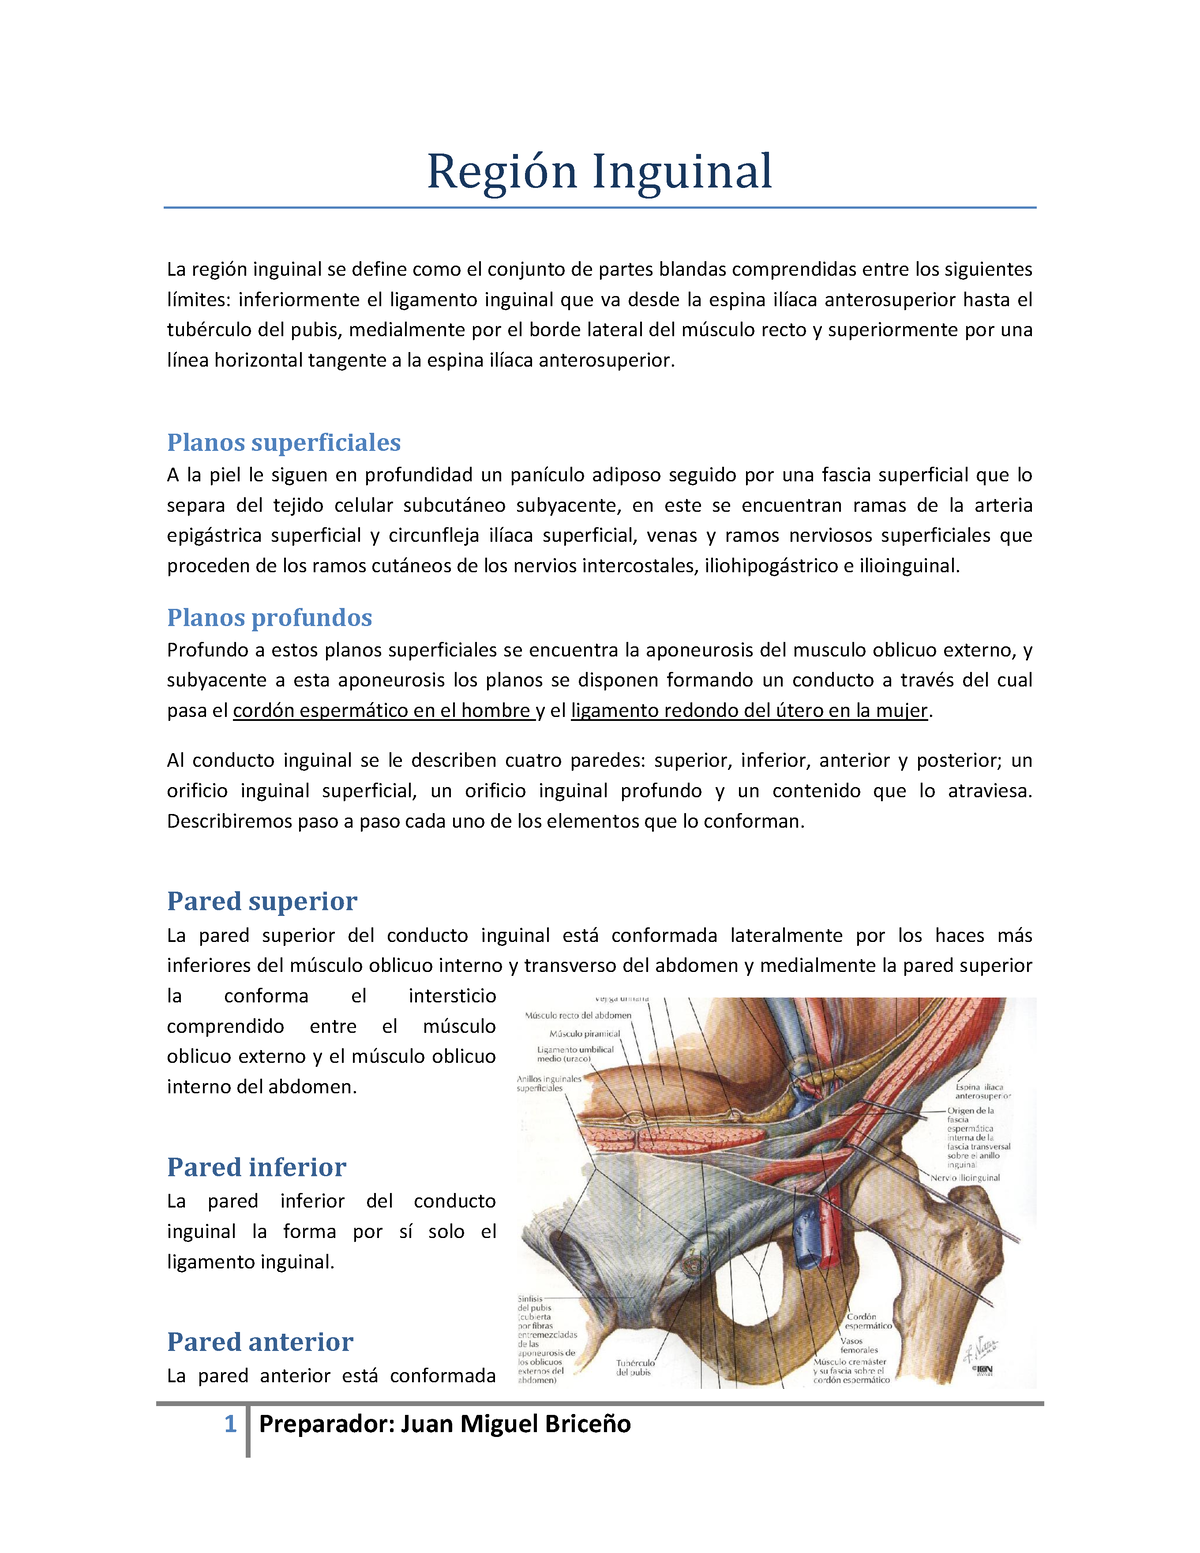 Anatomía de la región inguinal - Anatomia - UTESA - Studocu